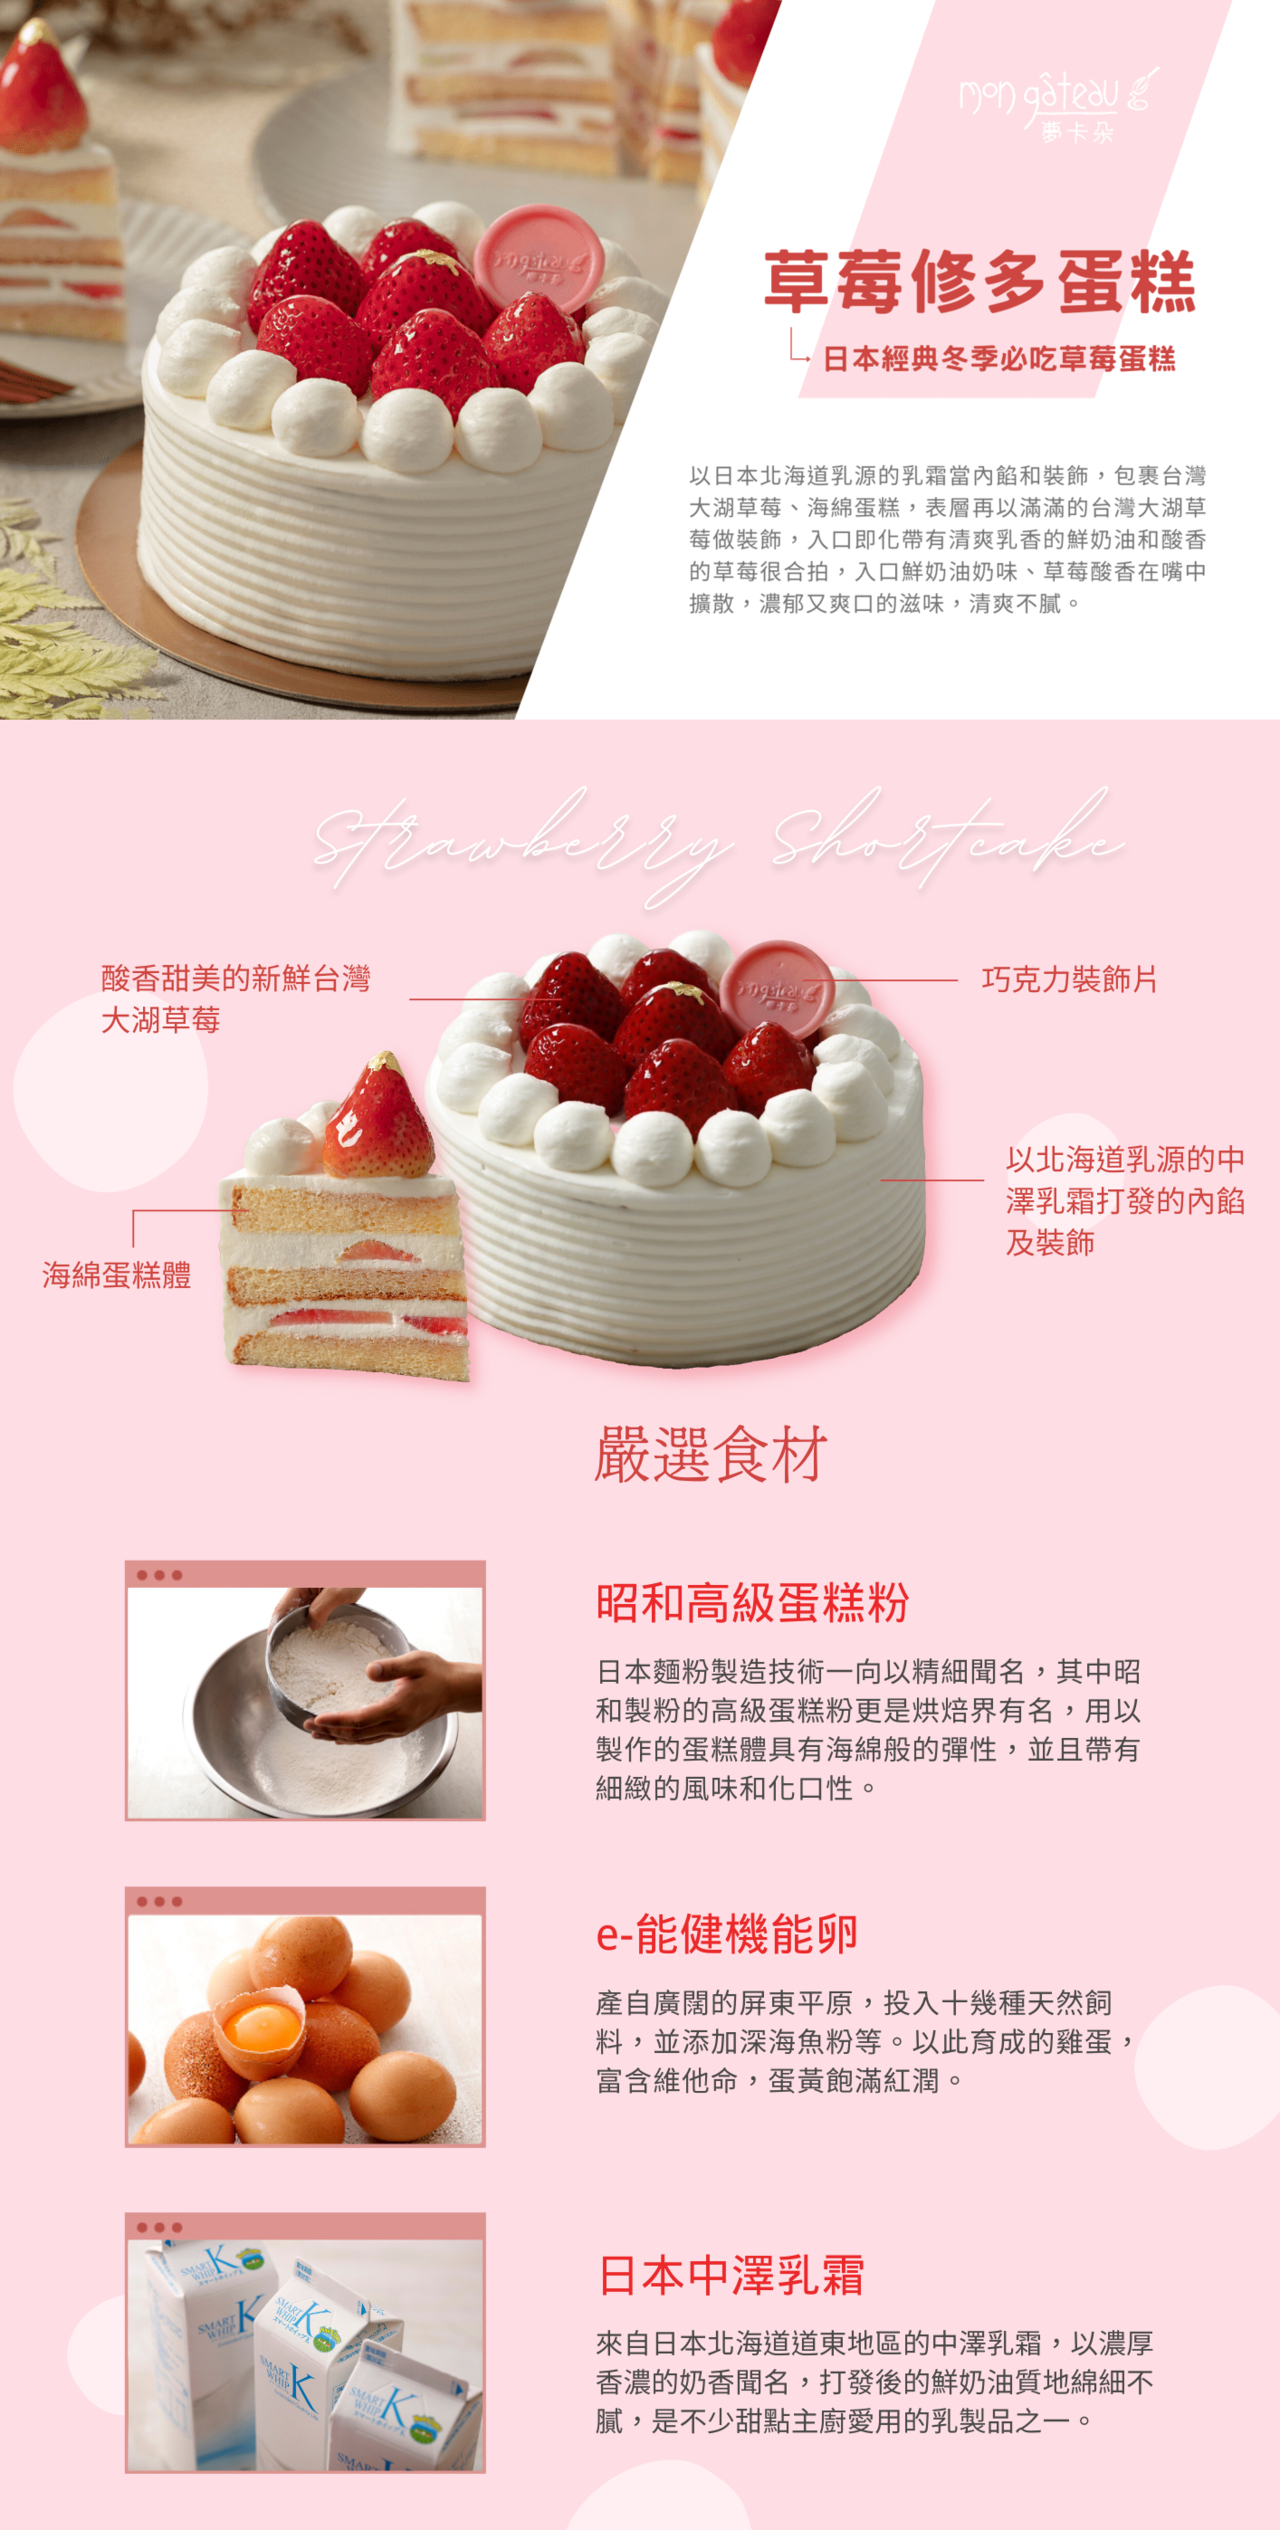 草莓修多蛋糕產品說明